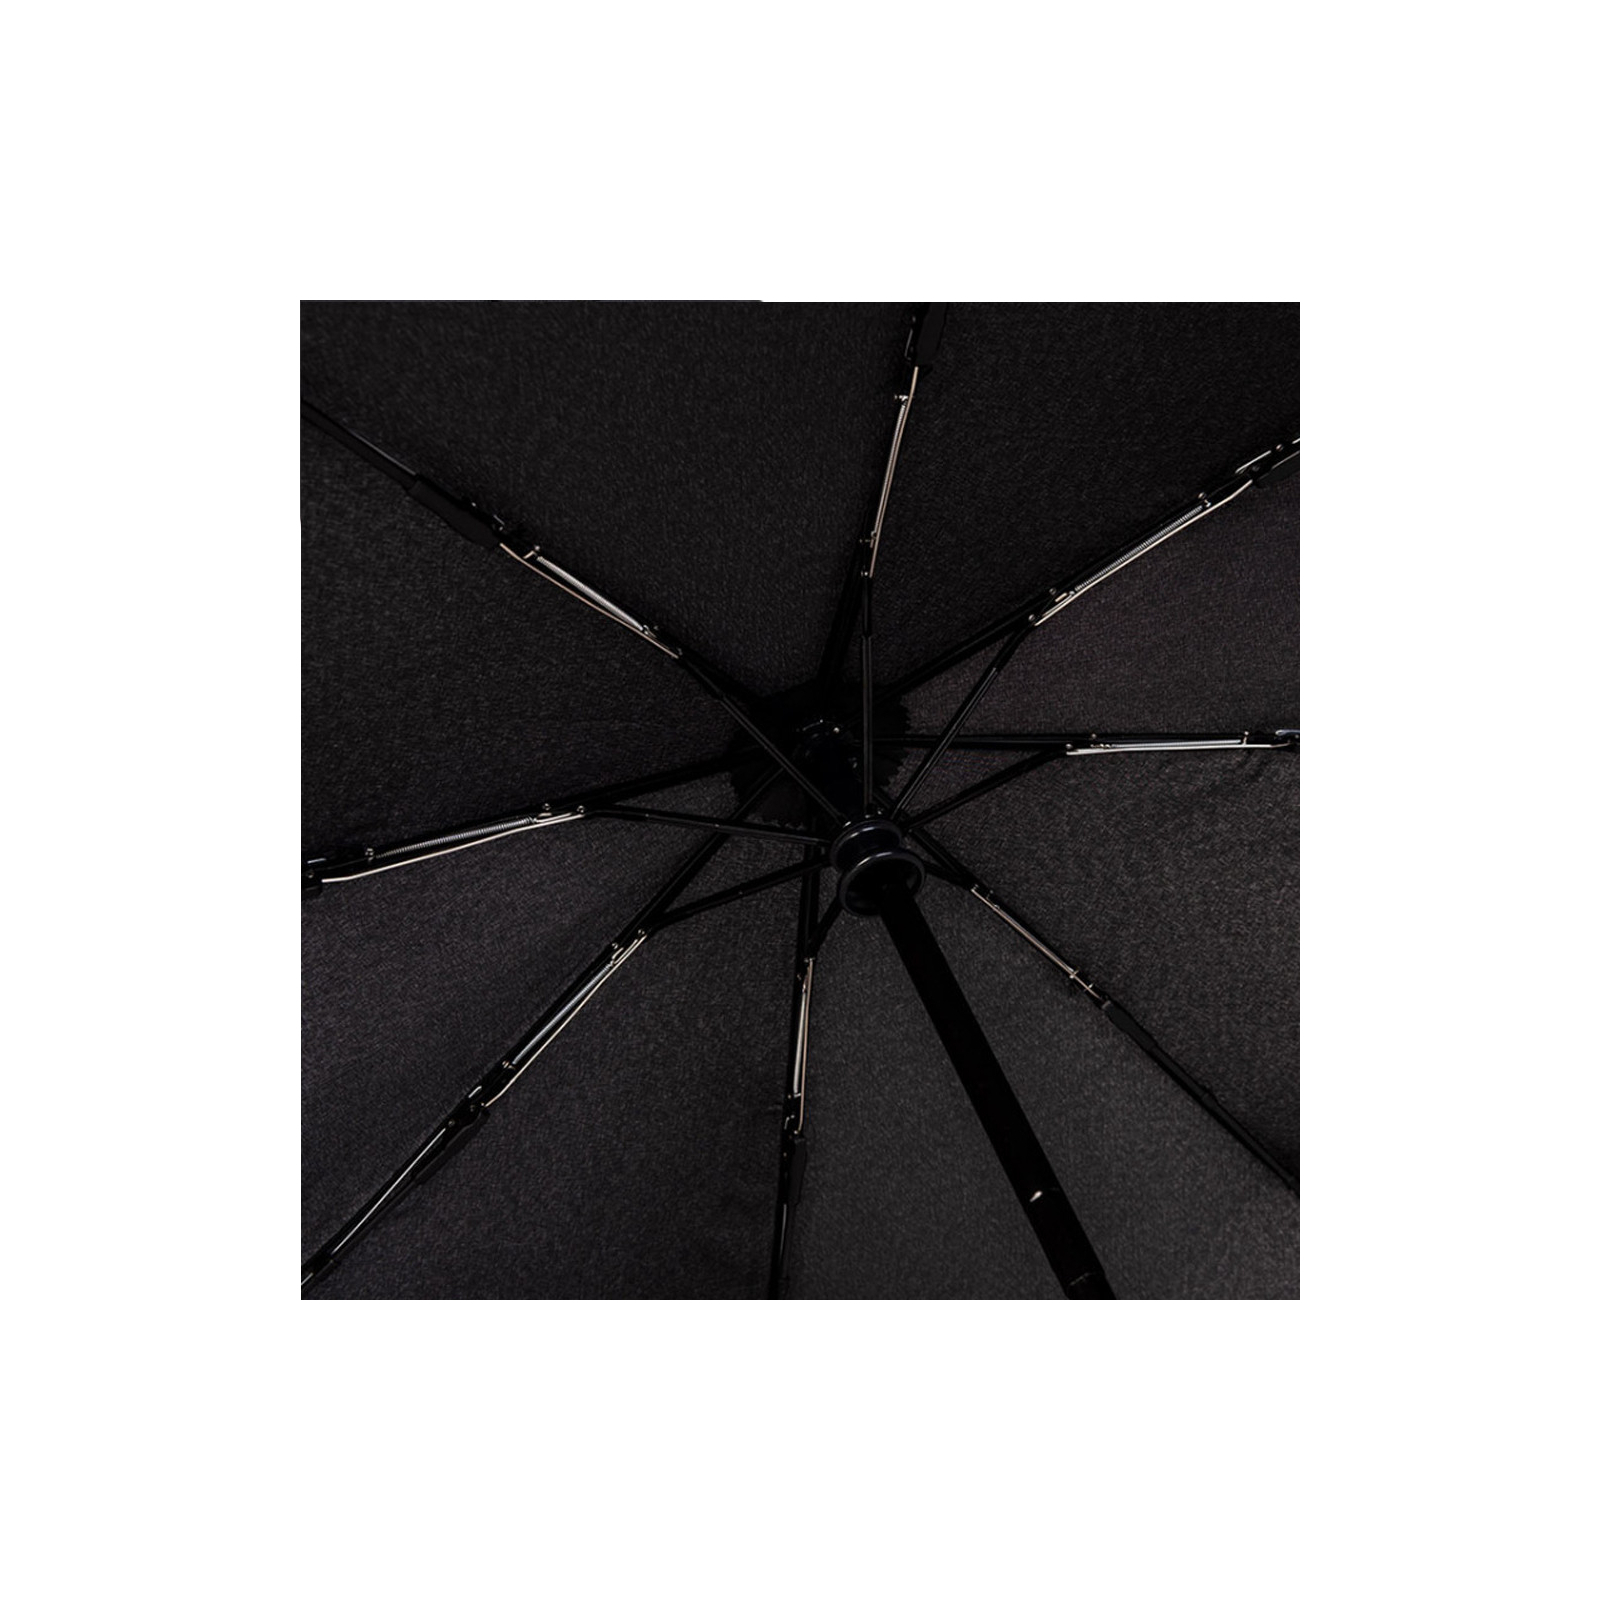 Парасоля Knirps A.200 Medium Duomatic 2Fly Black складана (Kn95 7200 8516) зображення 4